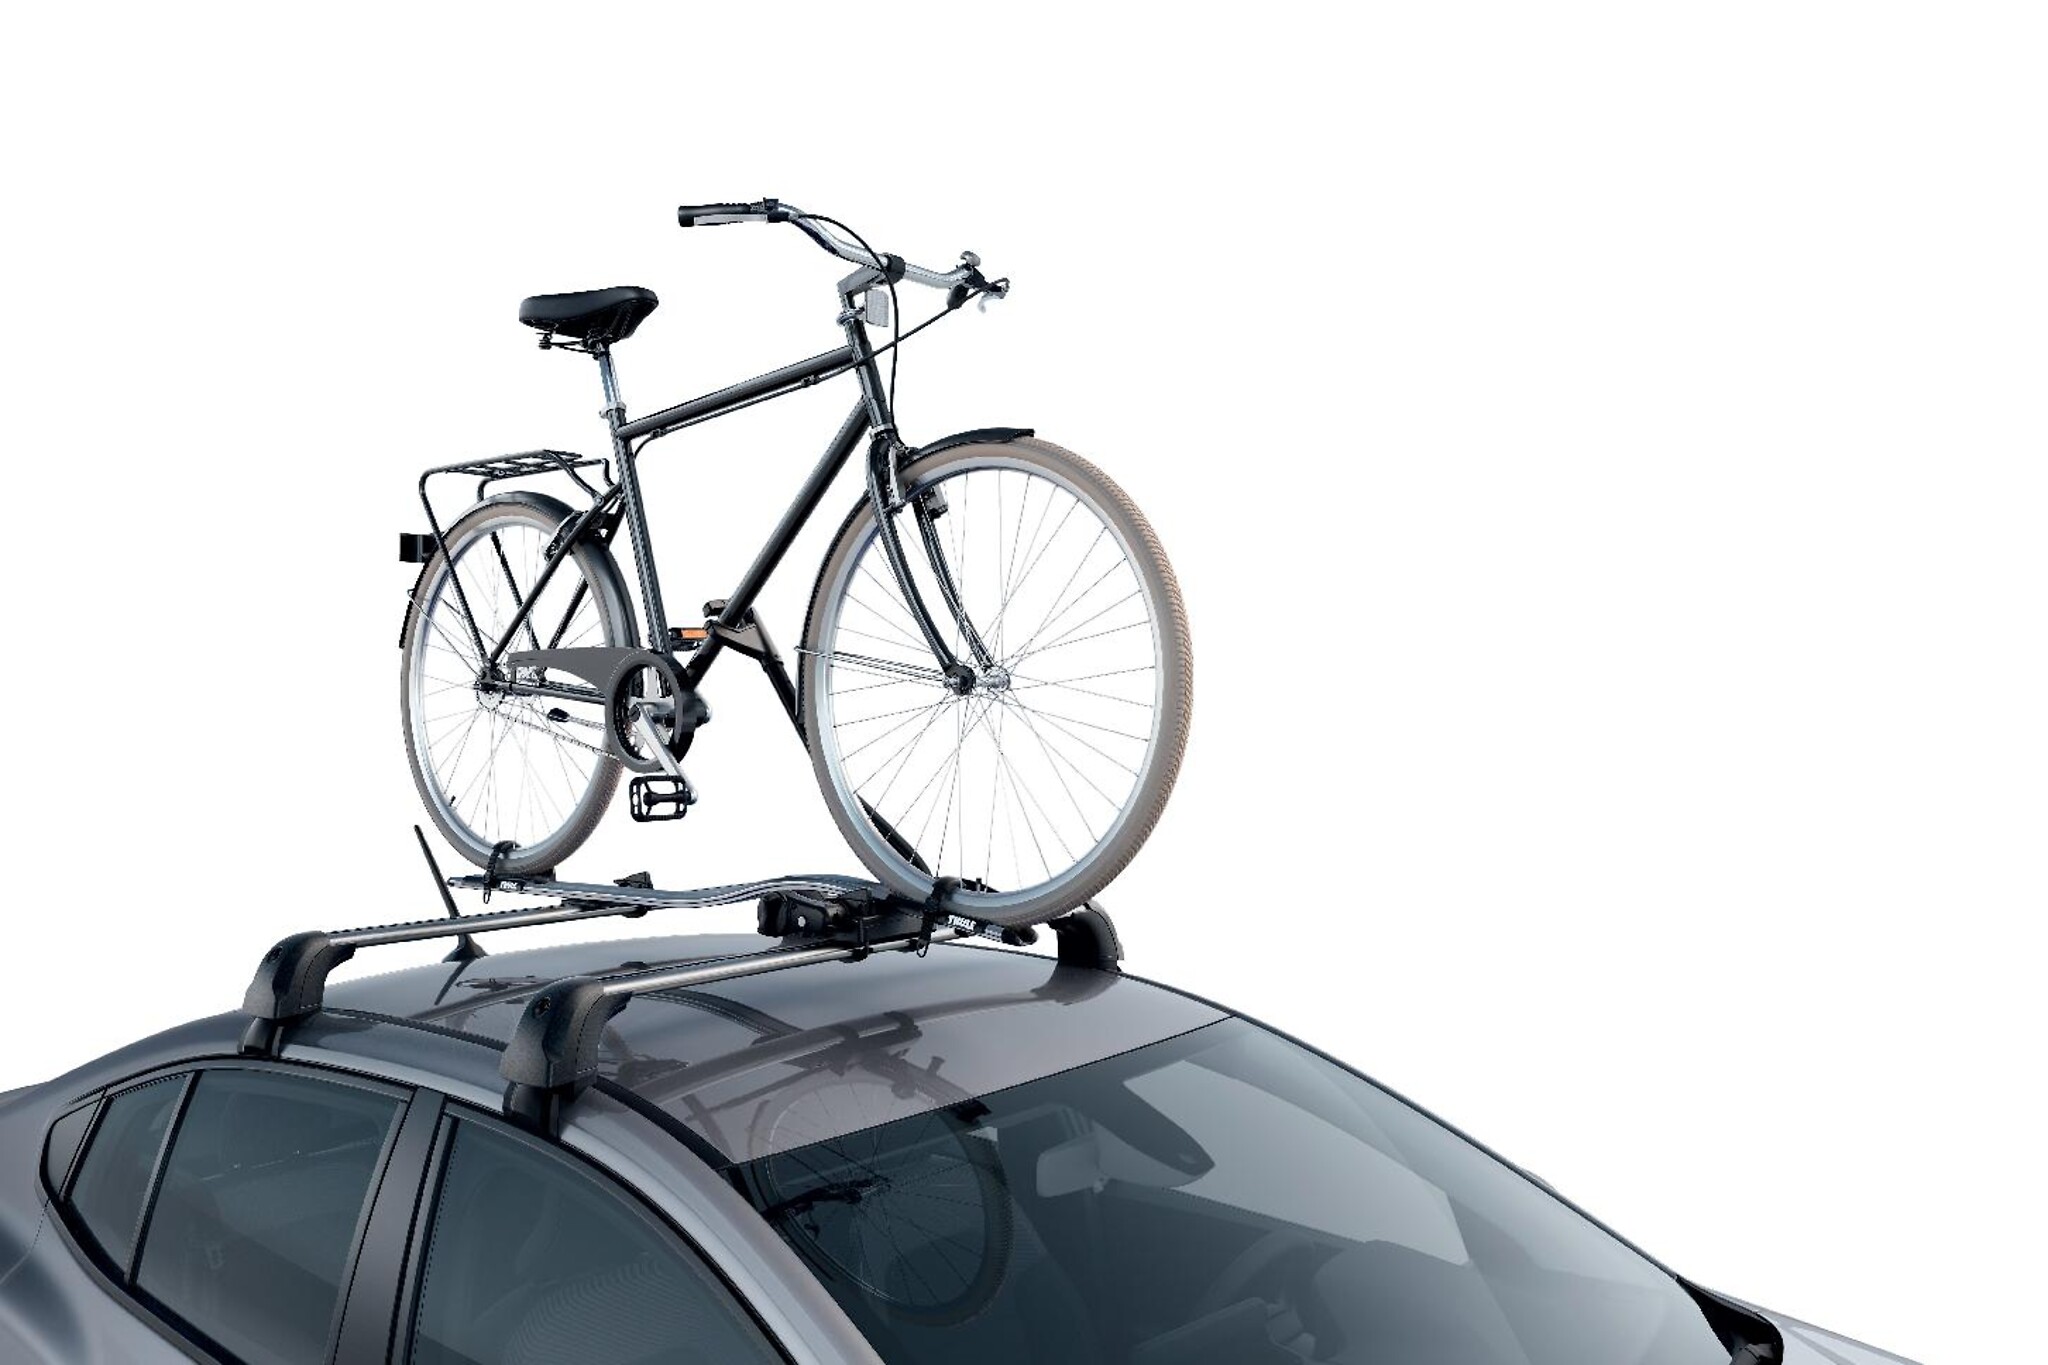 Porta-bicicletas nas barras de tejadilho Expert para 1 bicicleta